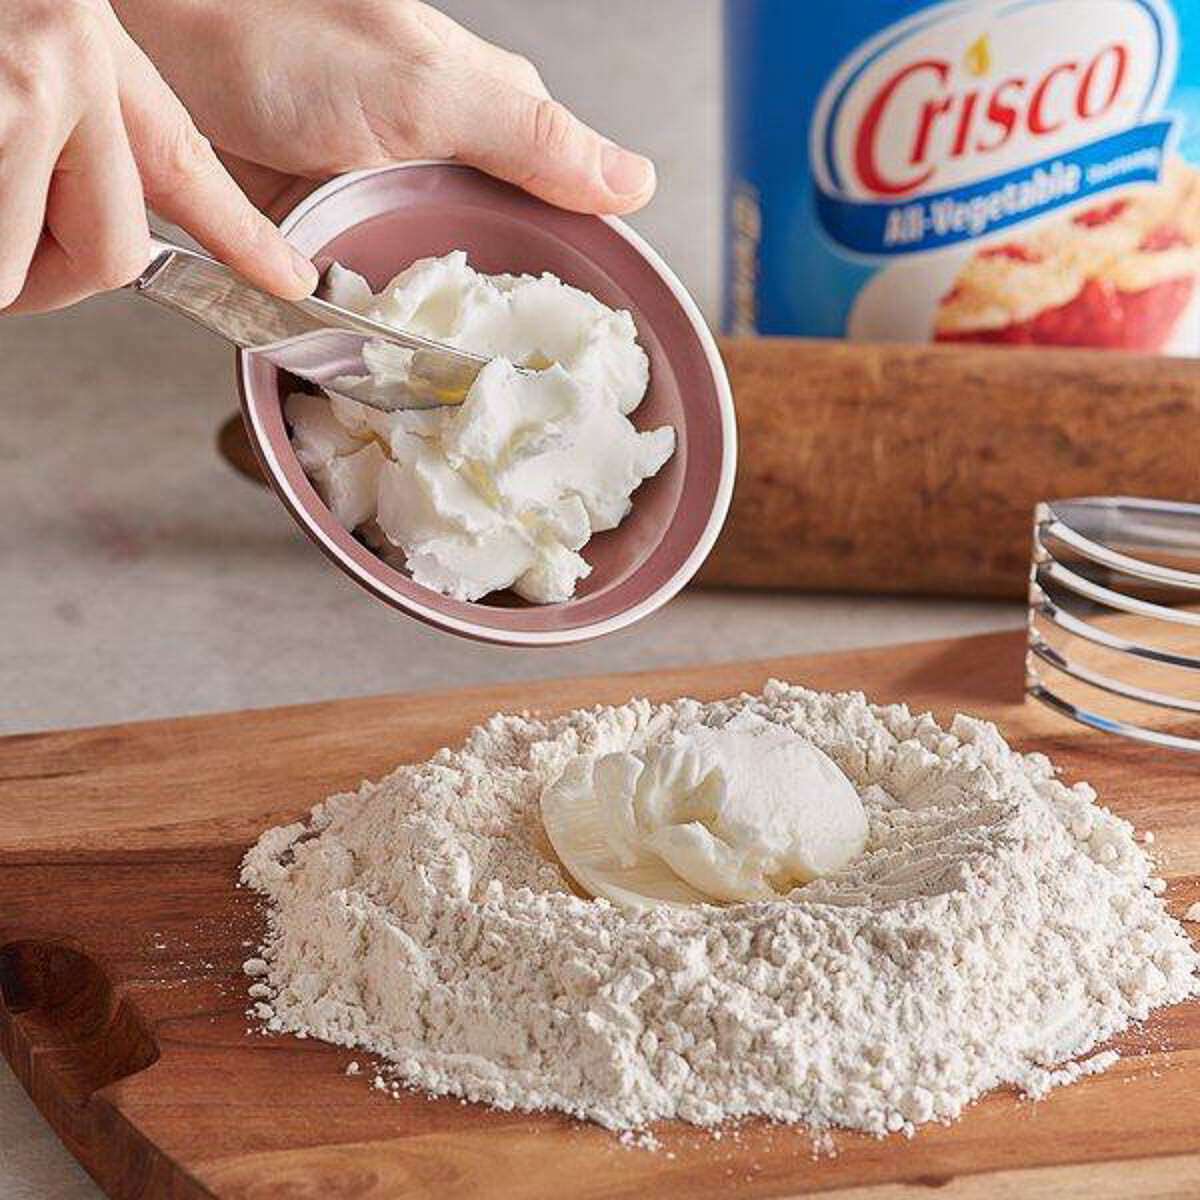 adding crisco to flour for pie dough.